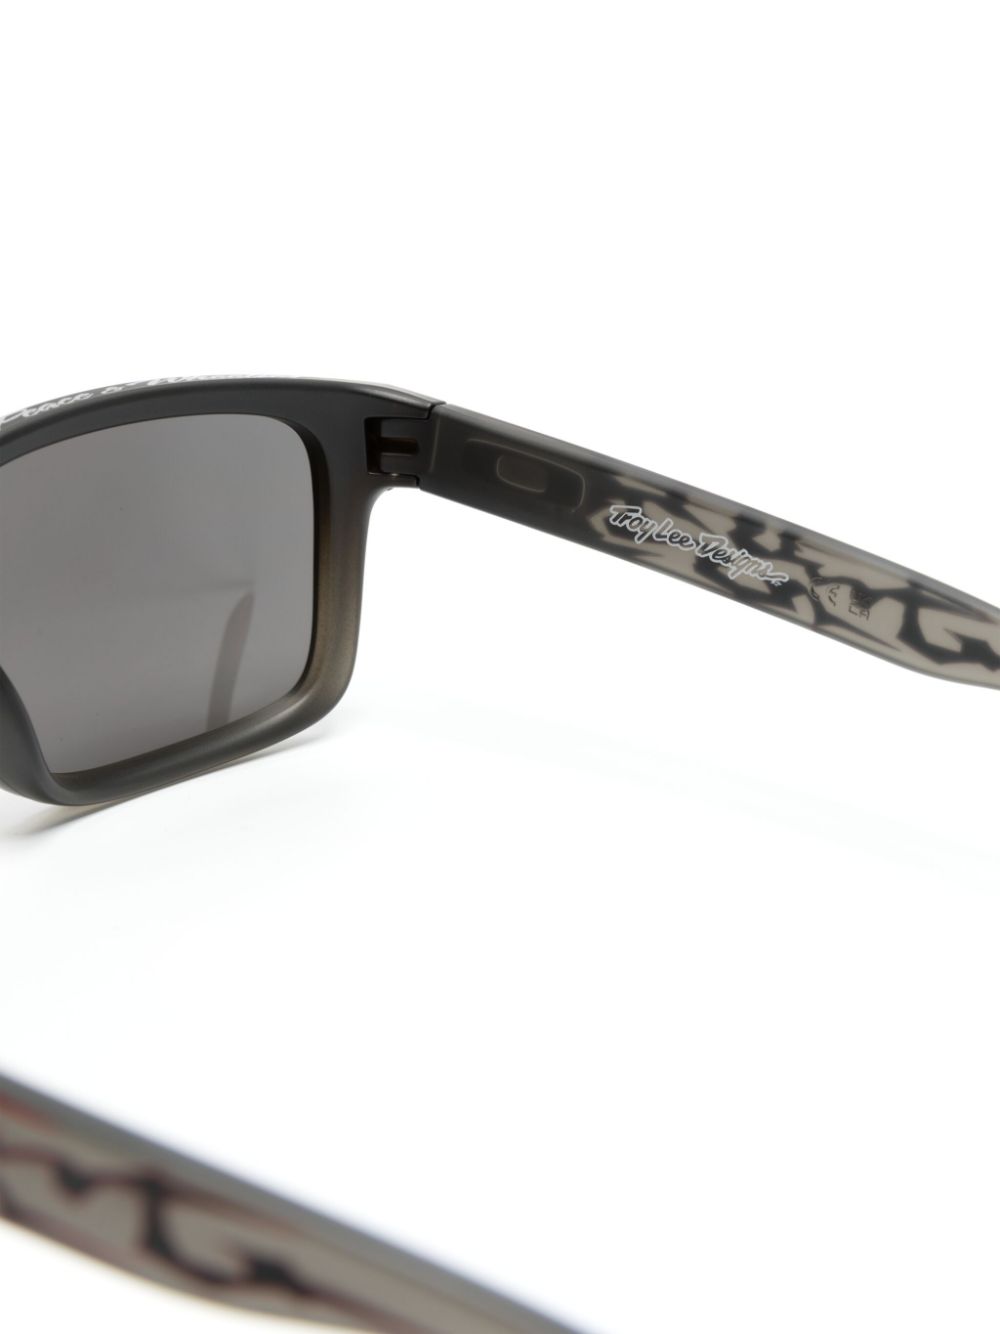 Holbrook square-frame sunglasses<BR/><BR/><BR/>